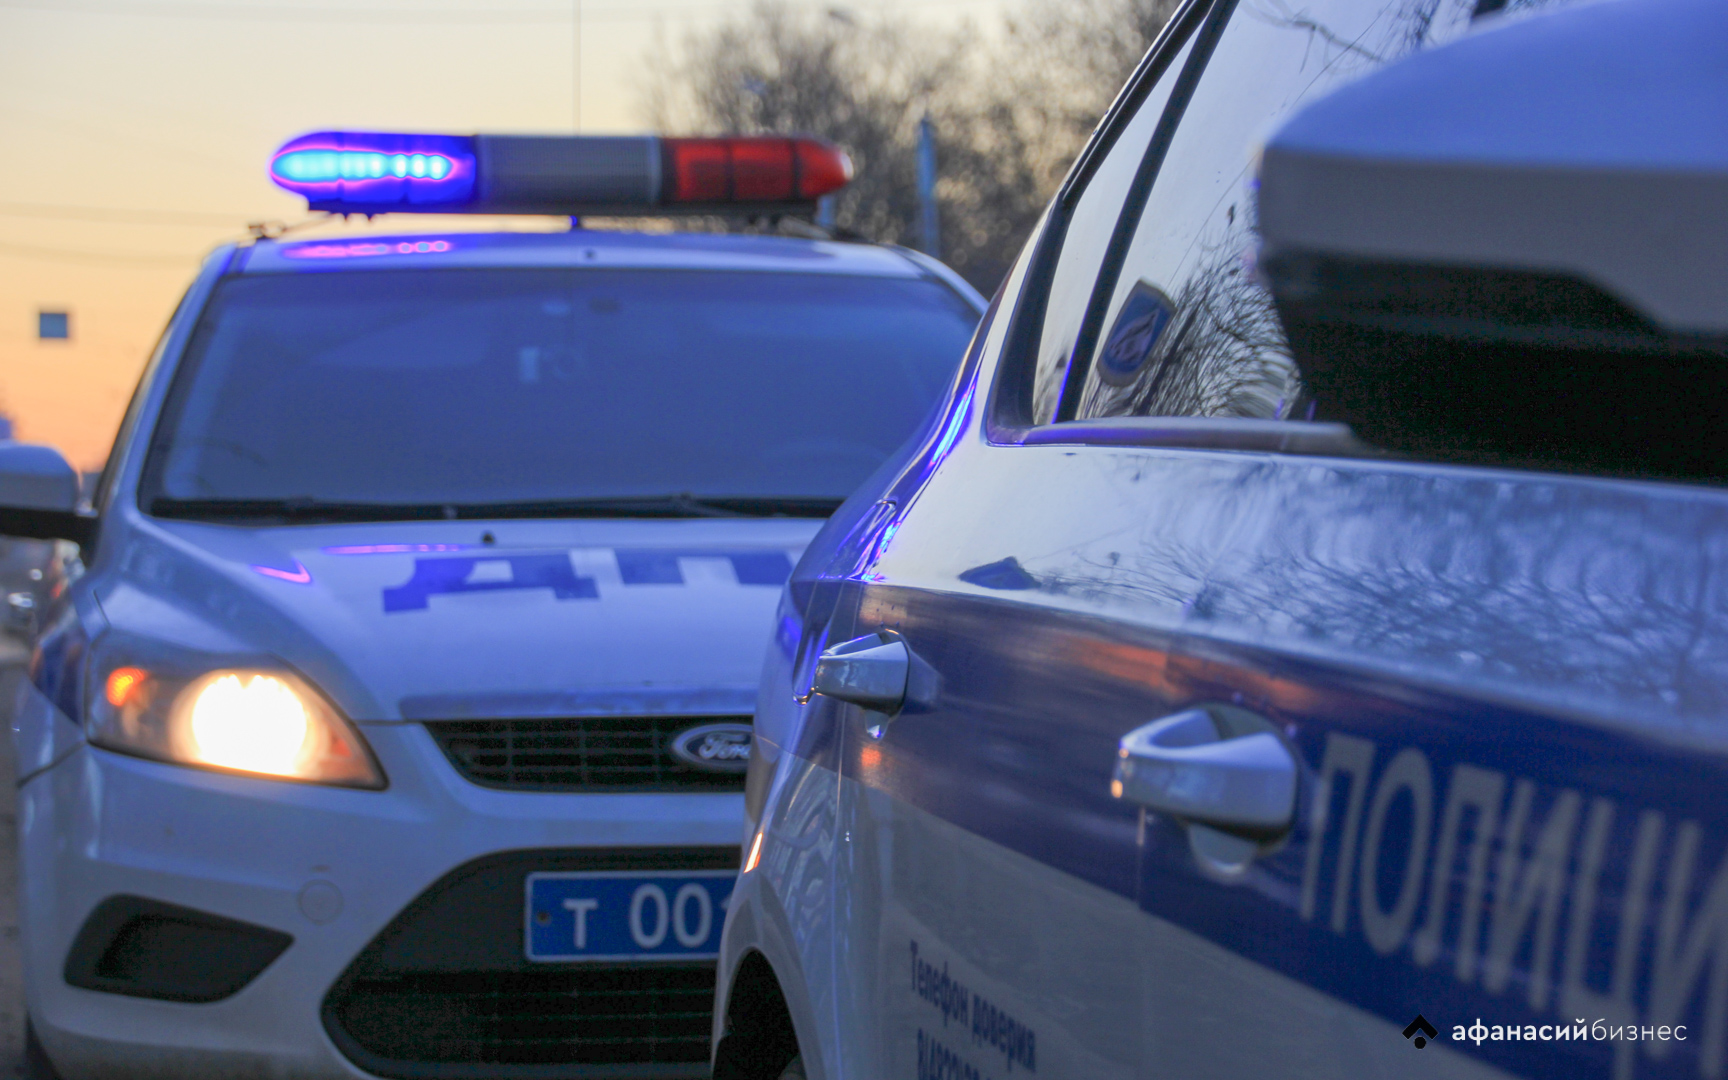 Два дальнобойщика пострадали в ДТП на трассе М10 в Тверской области